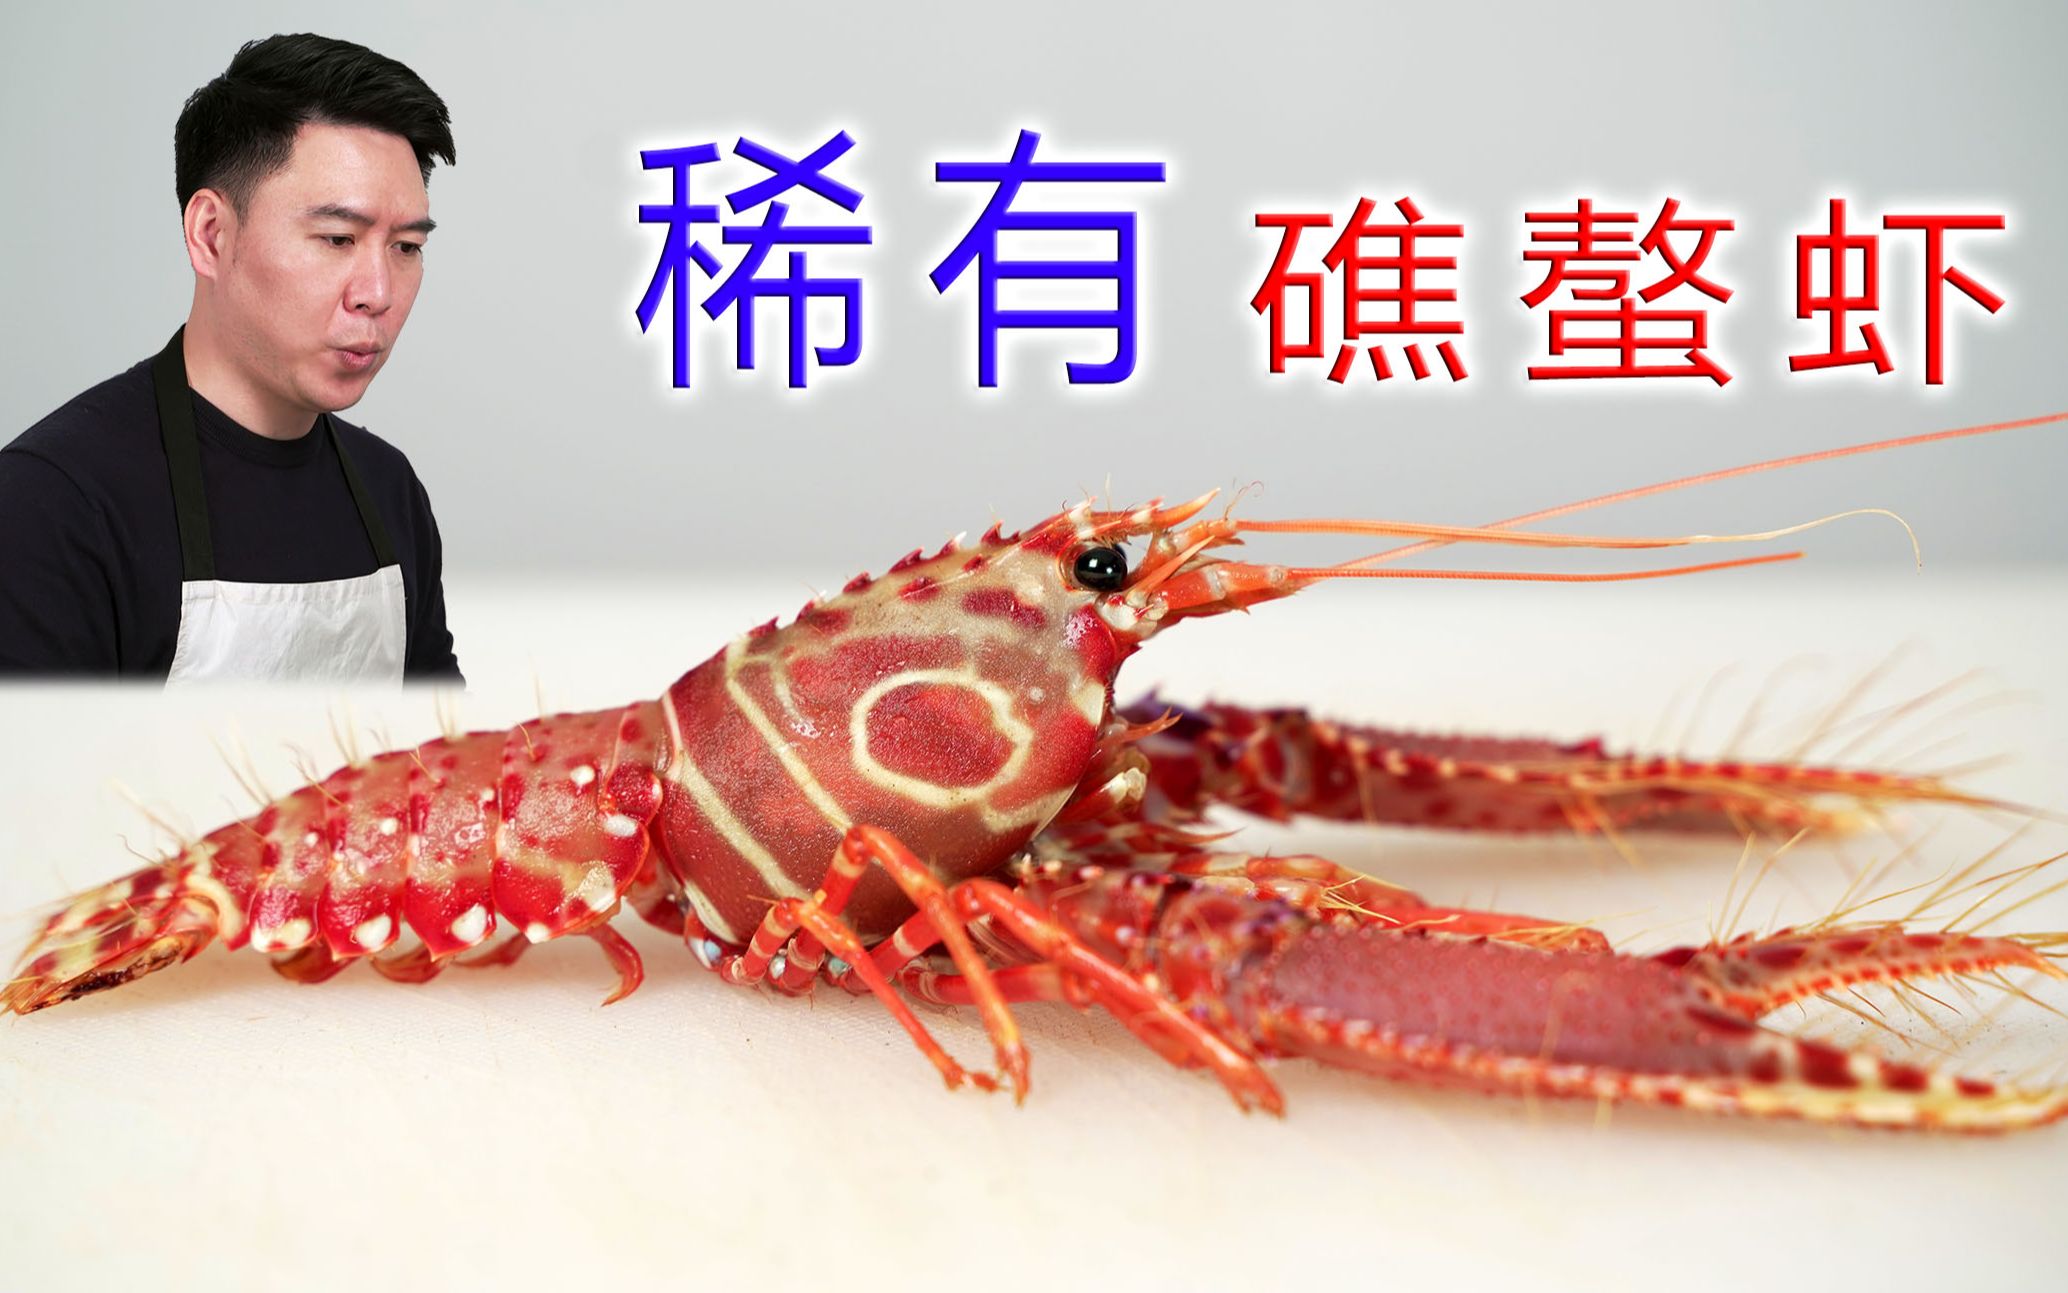 海螯虾或挪威龙虾高清摄影大图-千库网